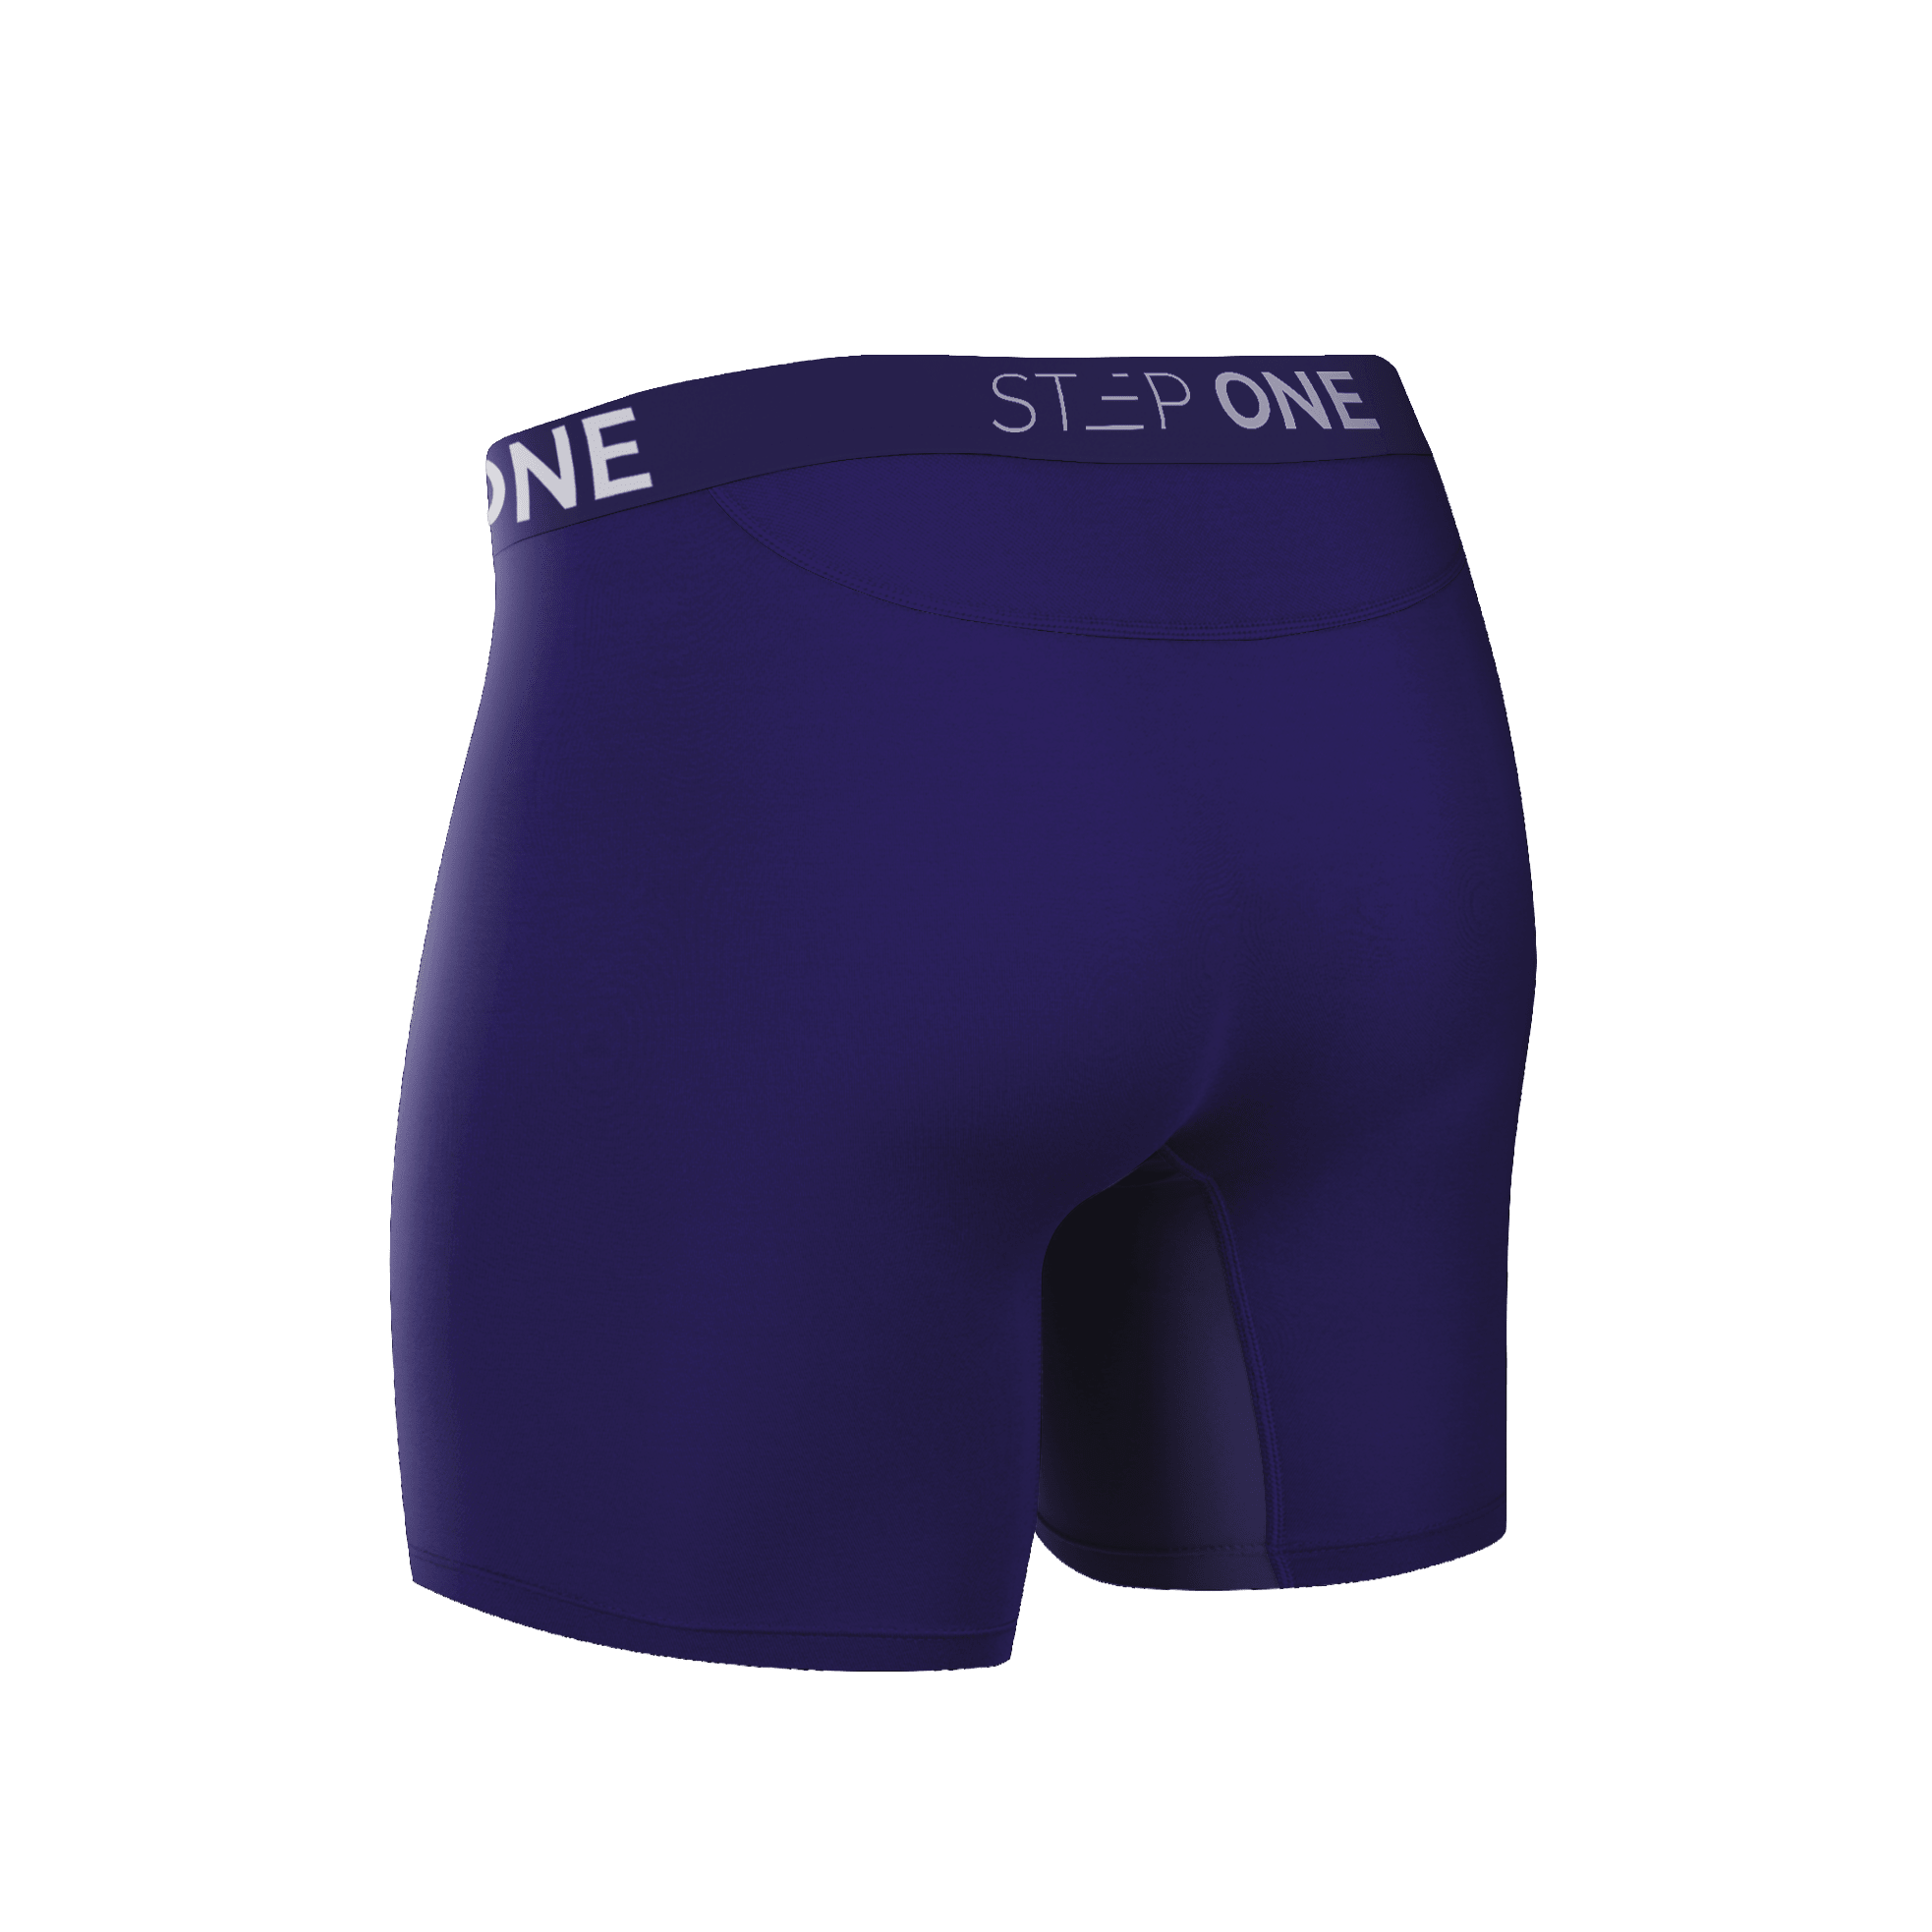 Buy Underwear Online at Step One | The best anti-chafe underwear